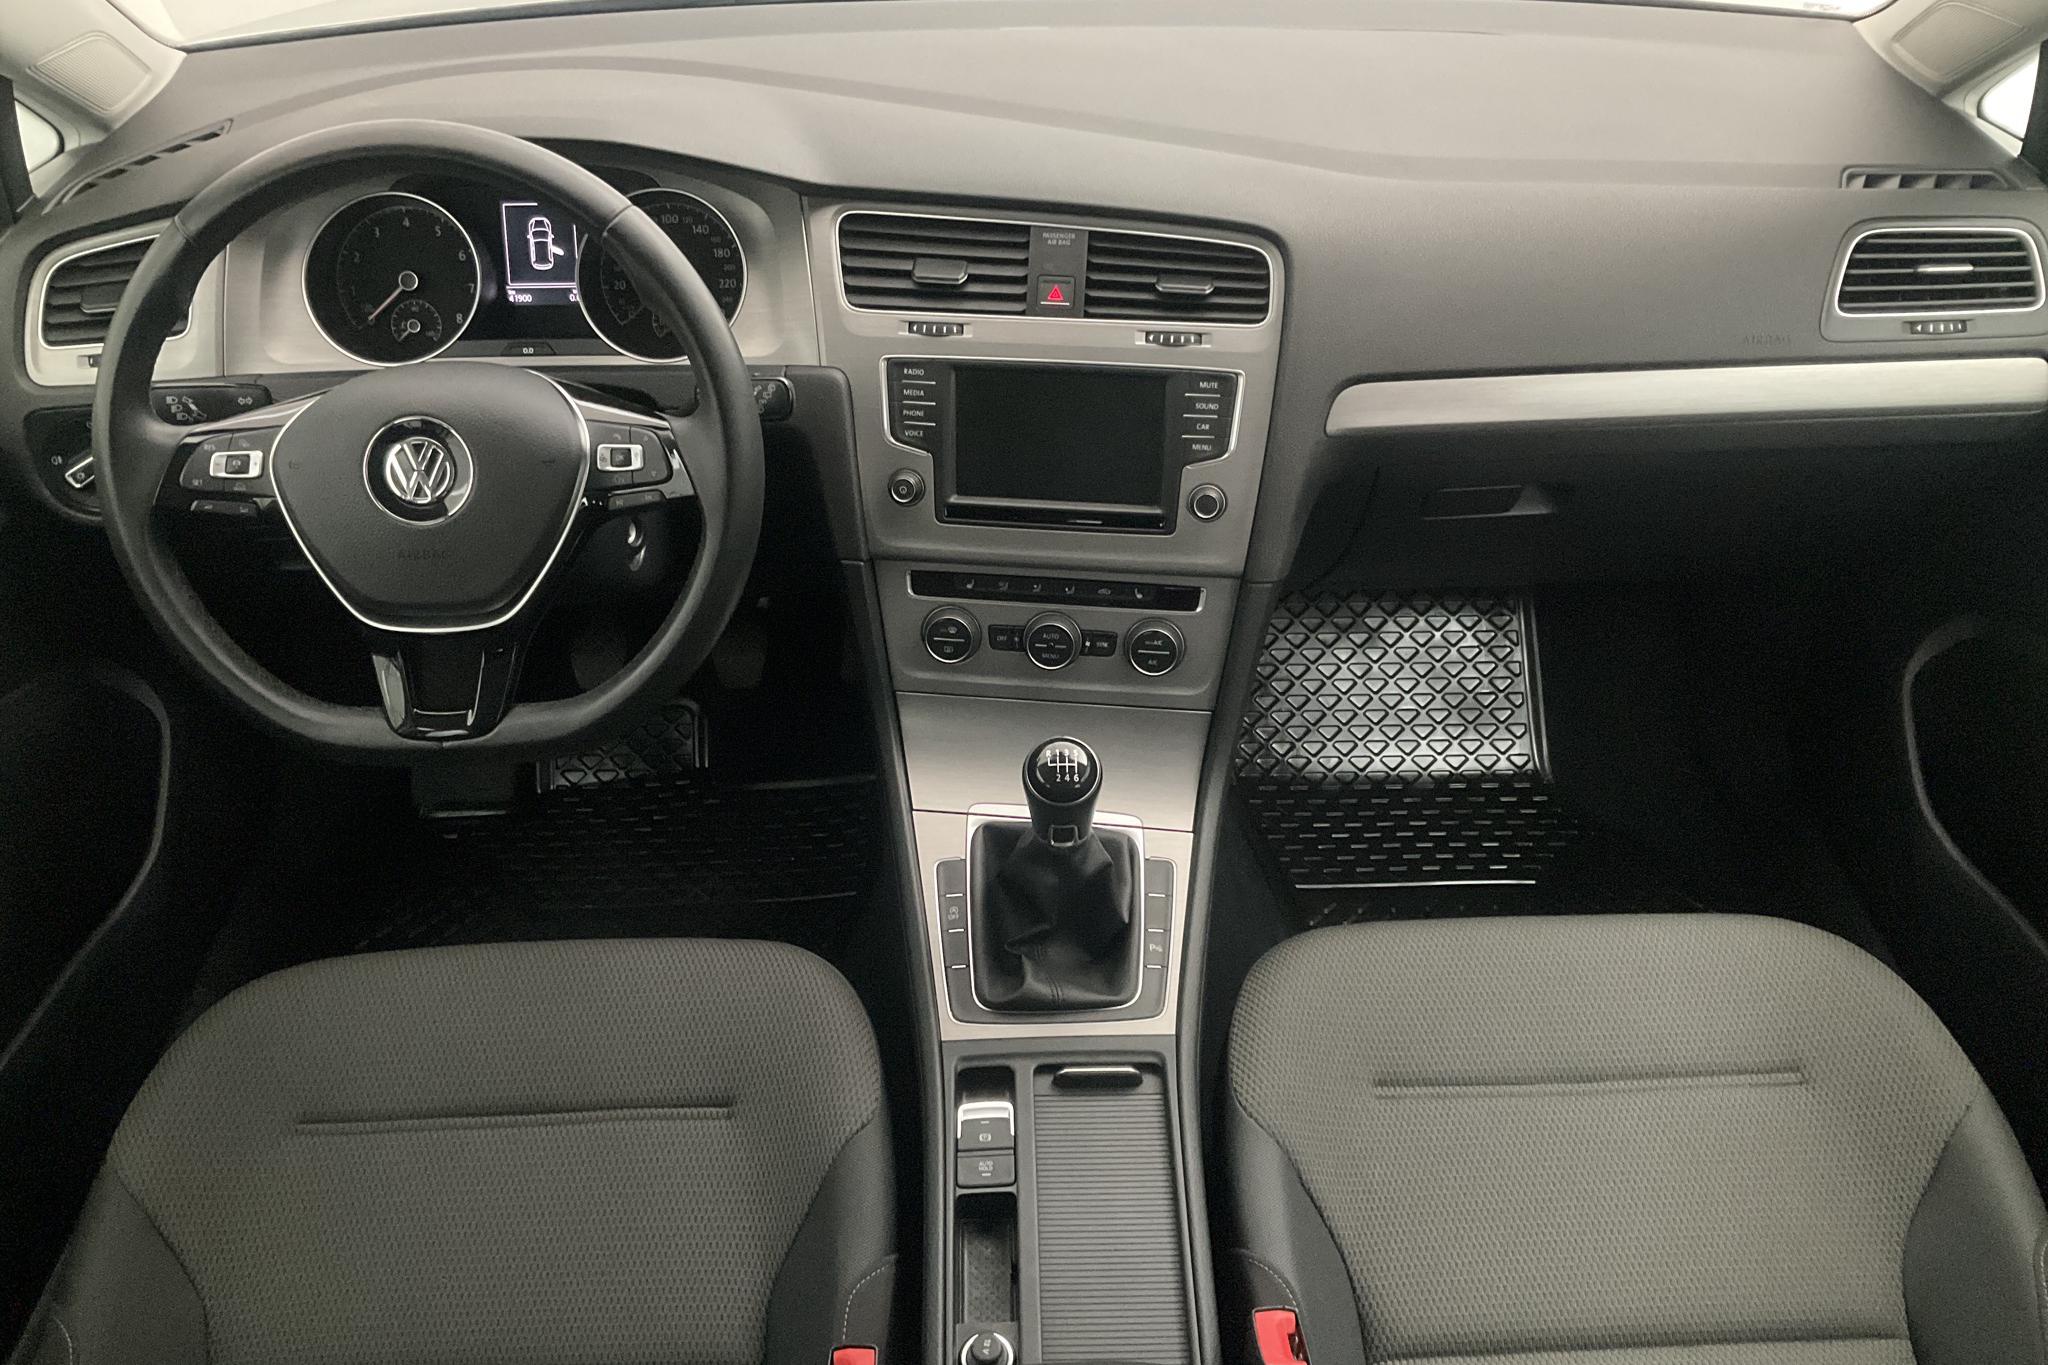 VW Golf VII 1.2 TSI 5dr (110hk) - 41 910 km - Manual - silver - 2017